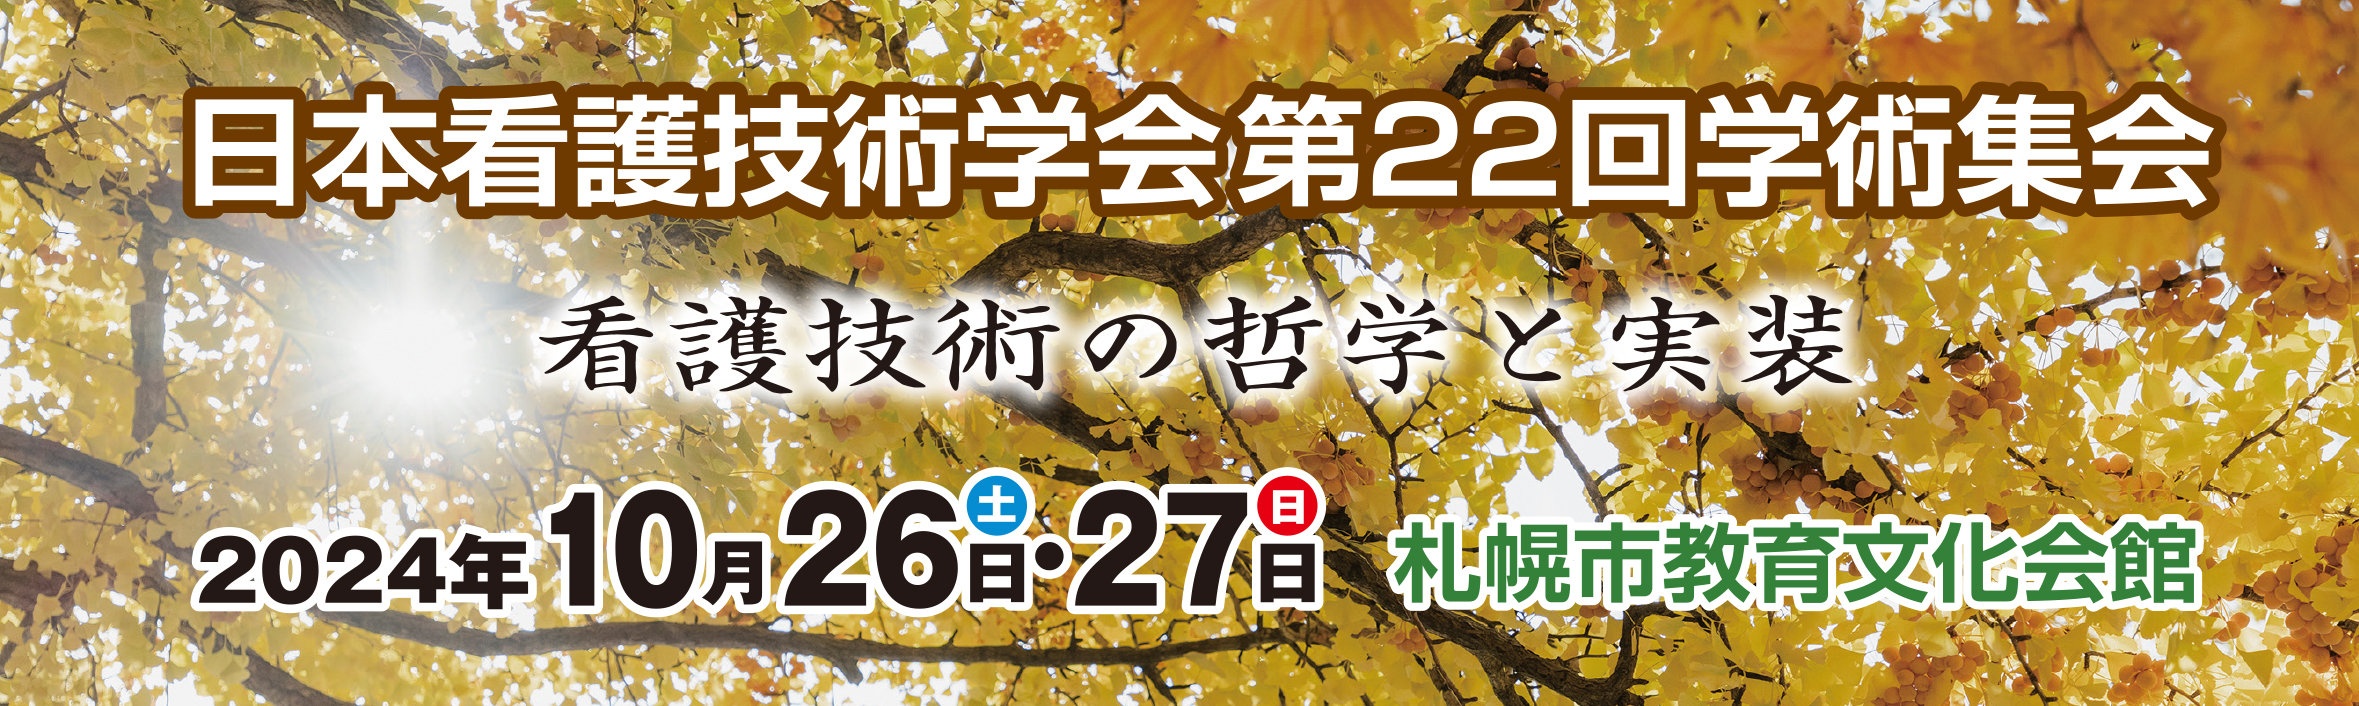 日本看護技術学会 第22回学術集会